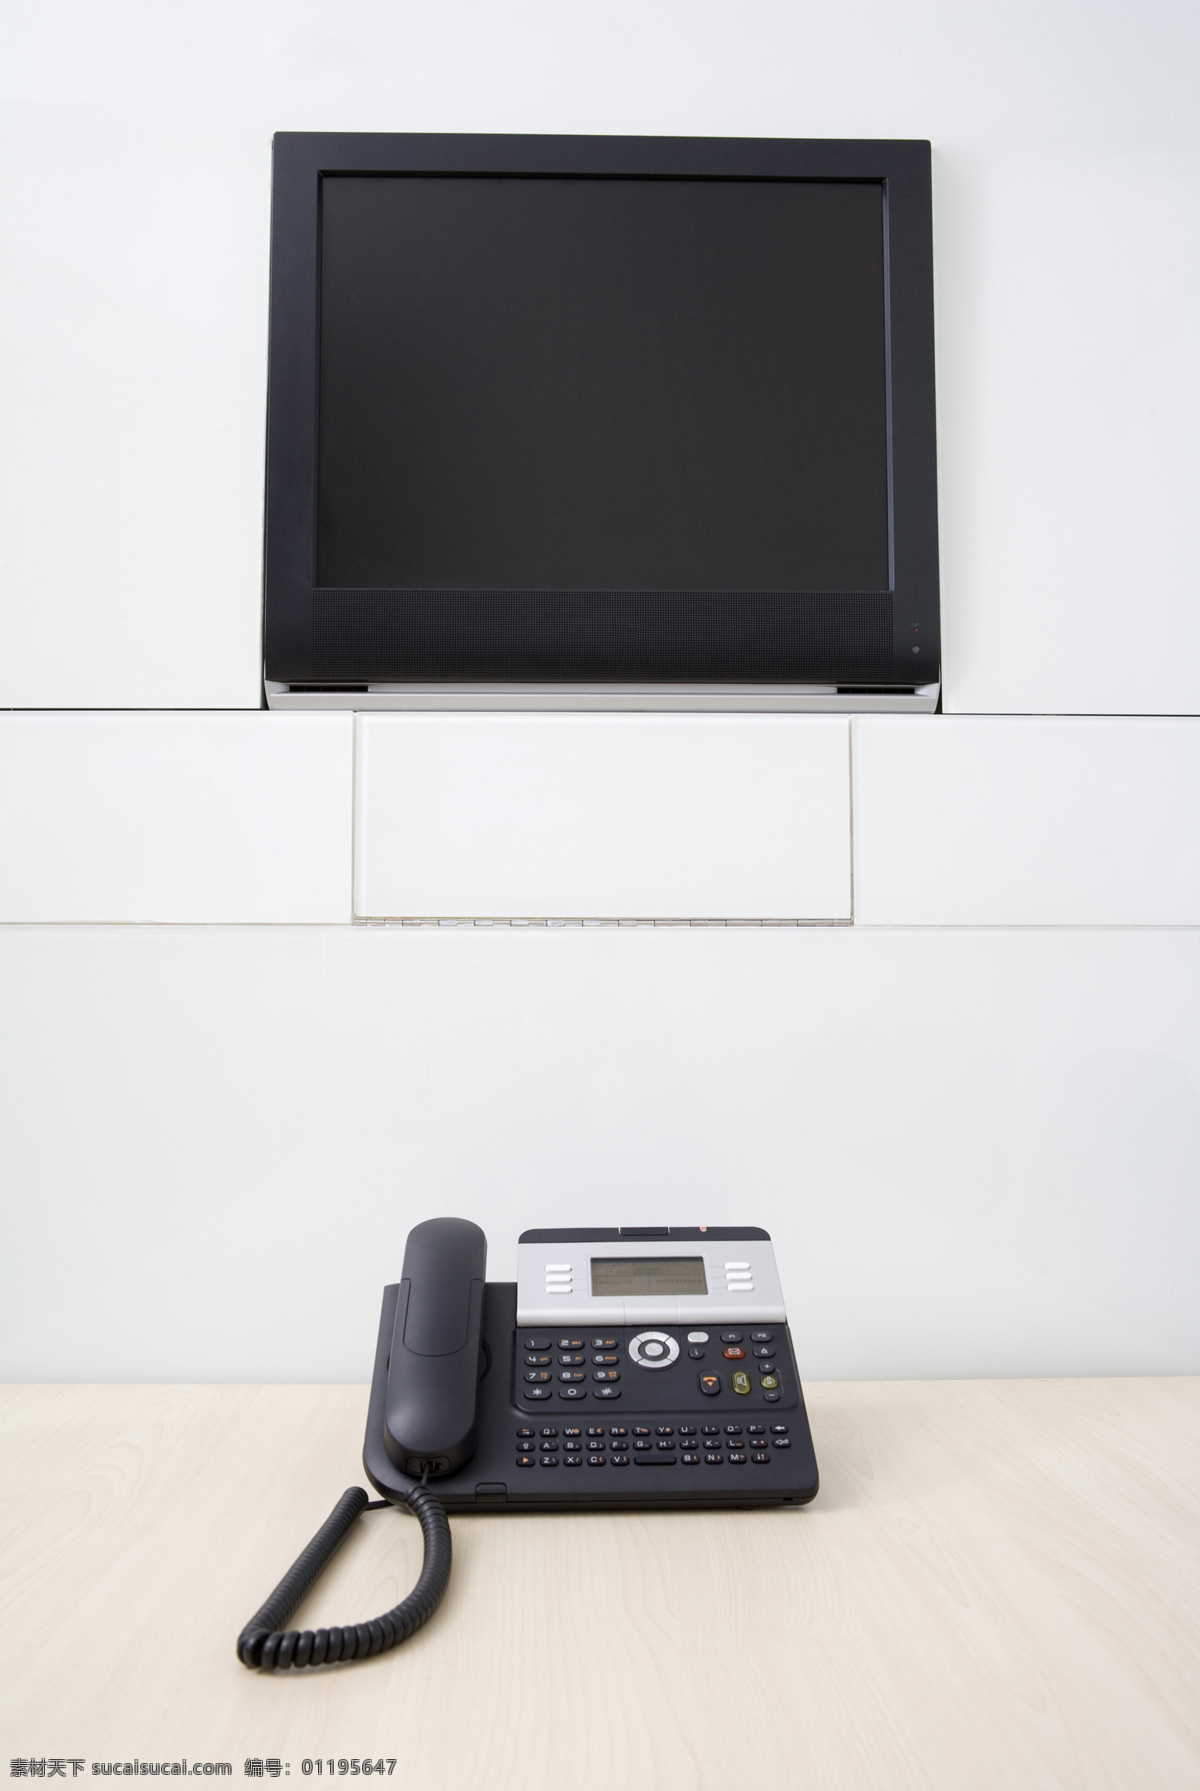 商务电话 办公室 电话 电视 商务金融 商务素材 商业 液晶屏 装饰素材 室内设计